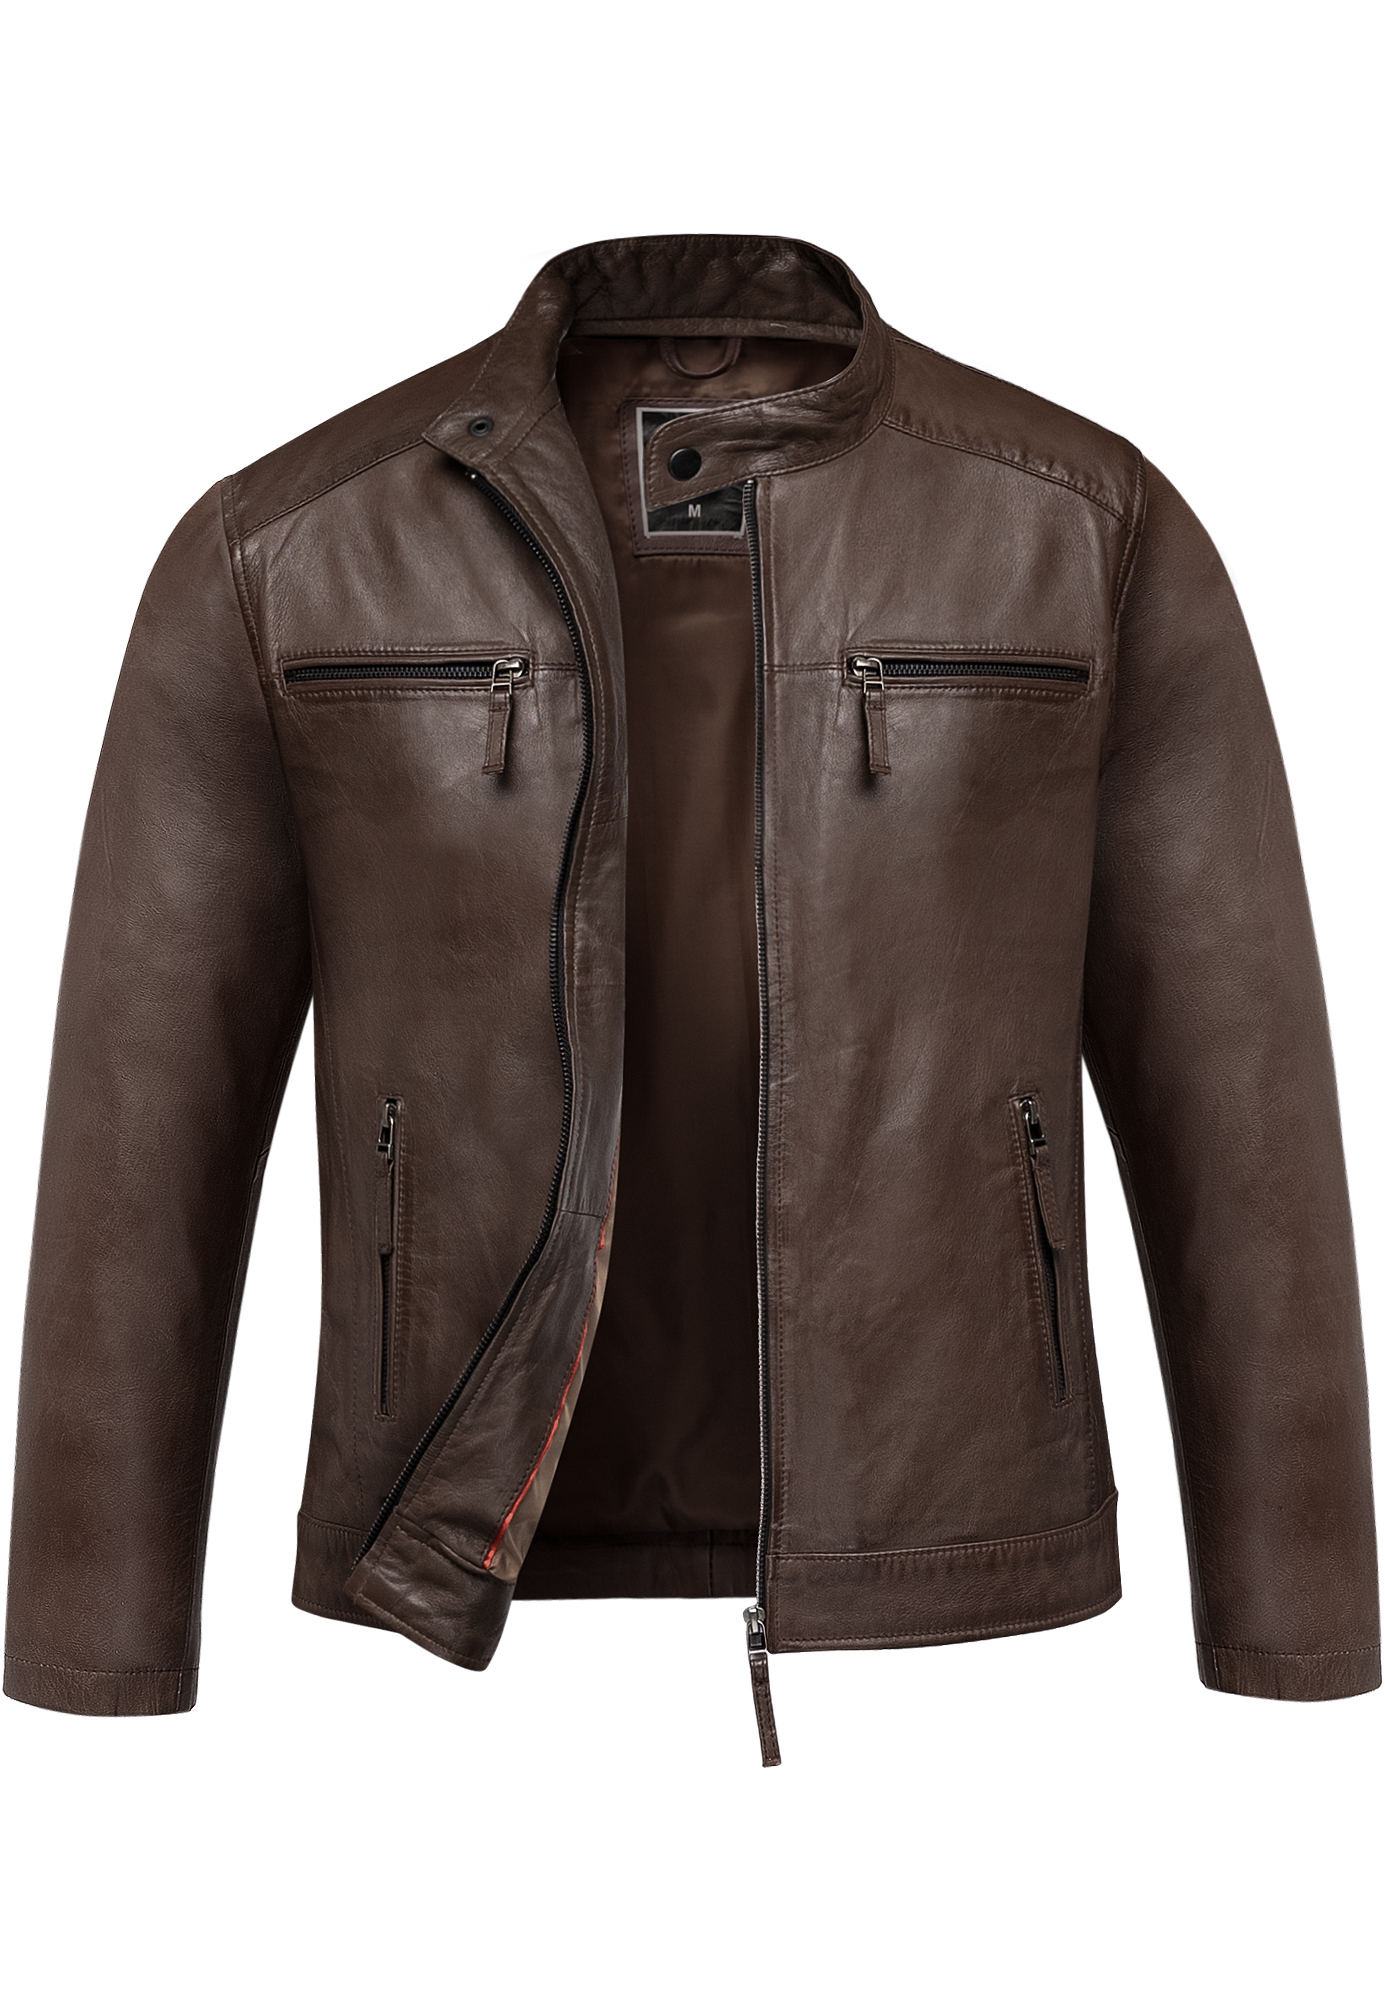 Кожаная куртка Amaci&Sons CICERO, коричневый